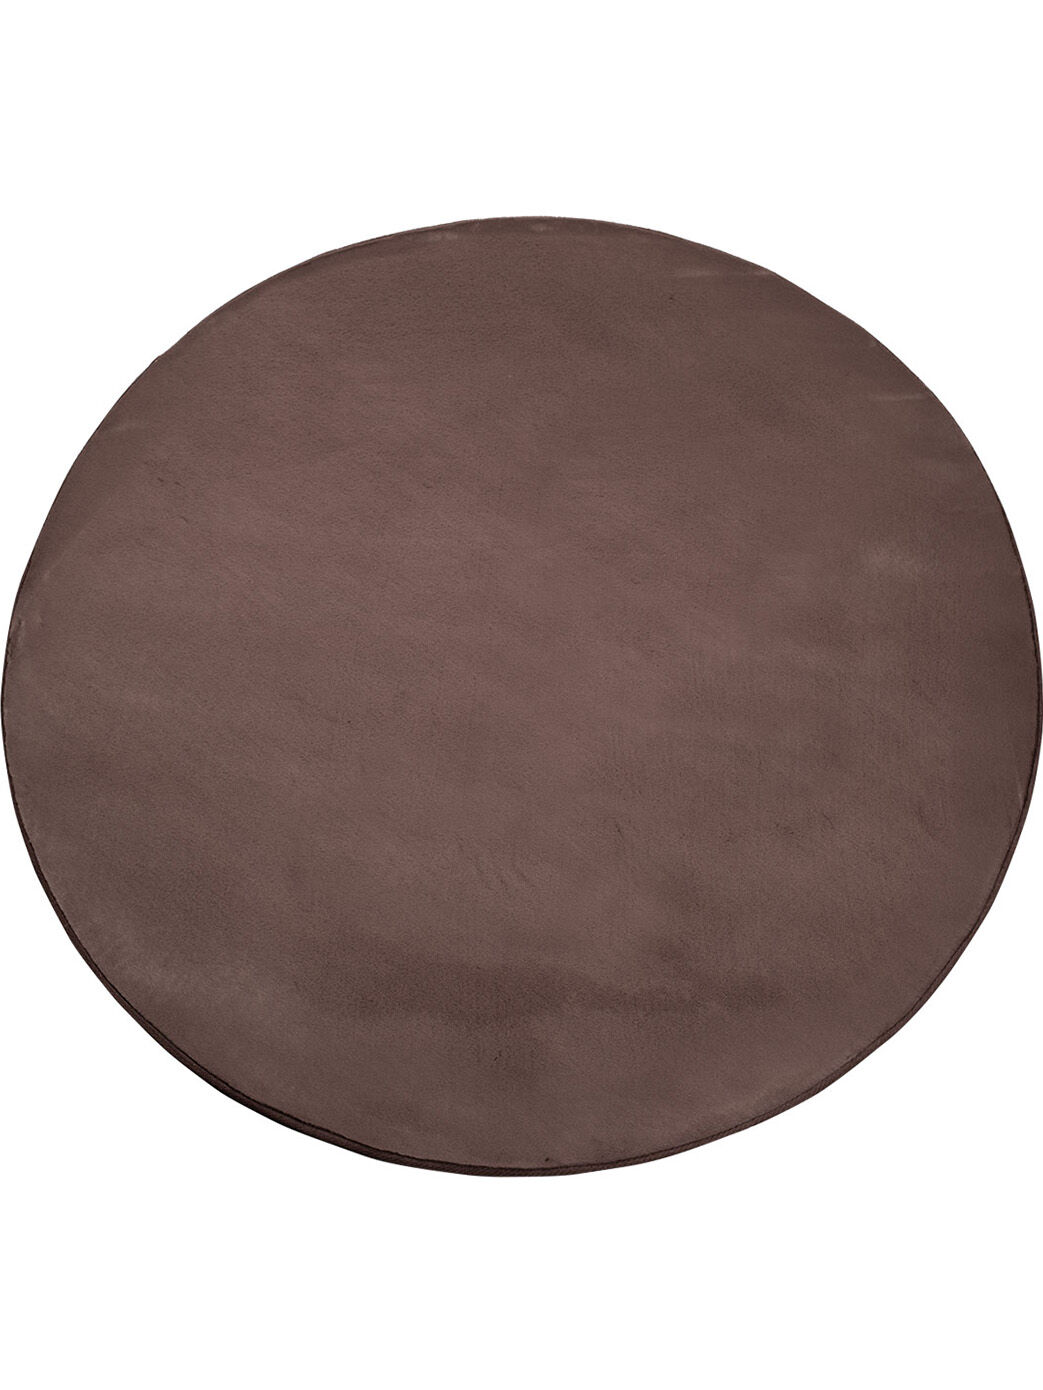 Flauschiger Teppich Mona Dark Taupe Rund 160x160 1